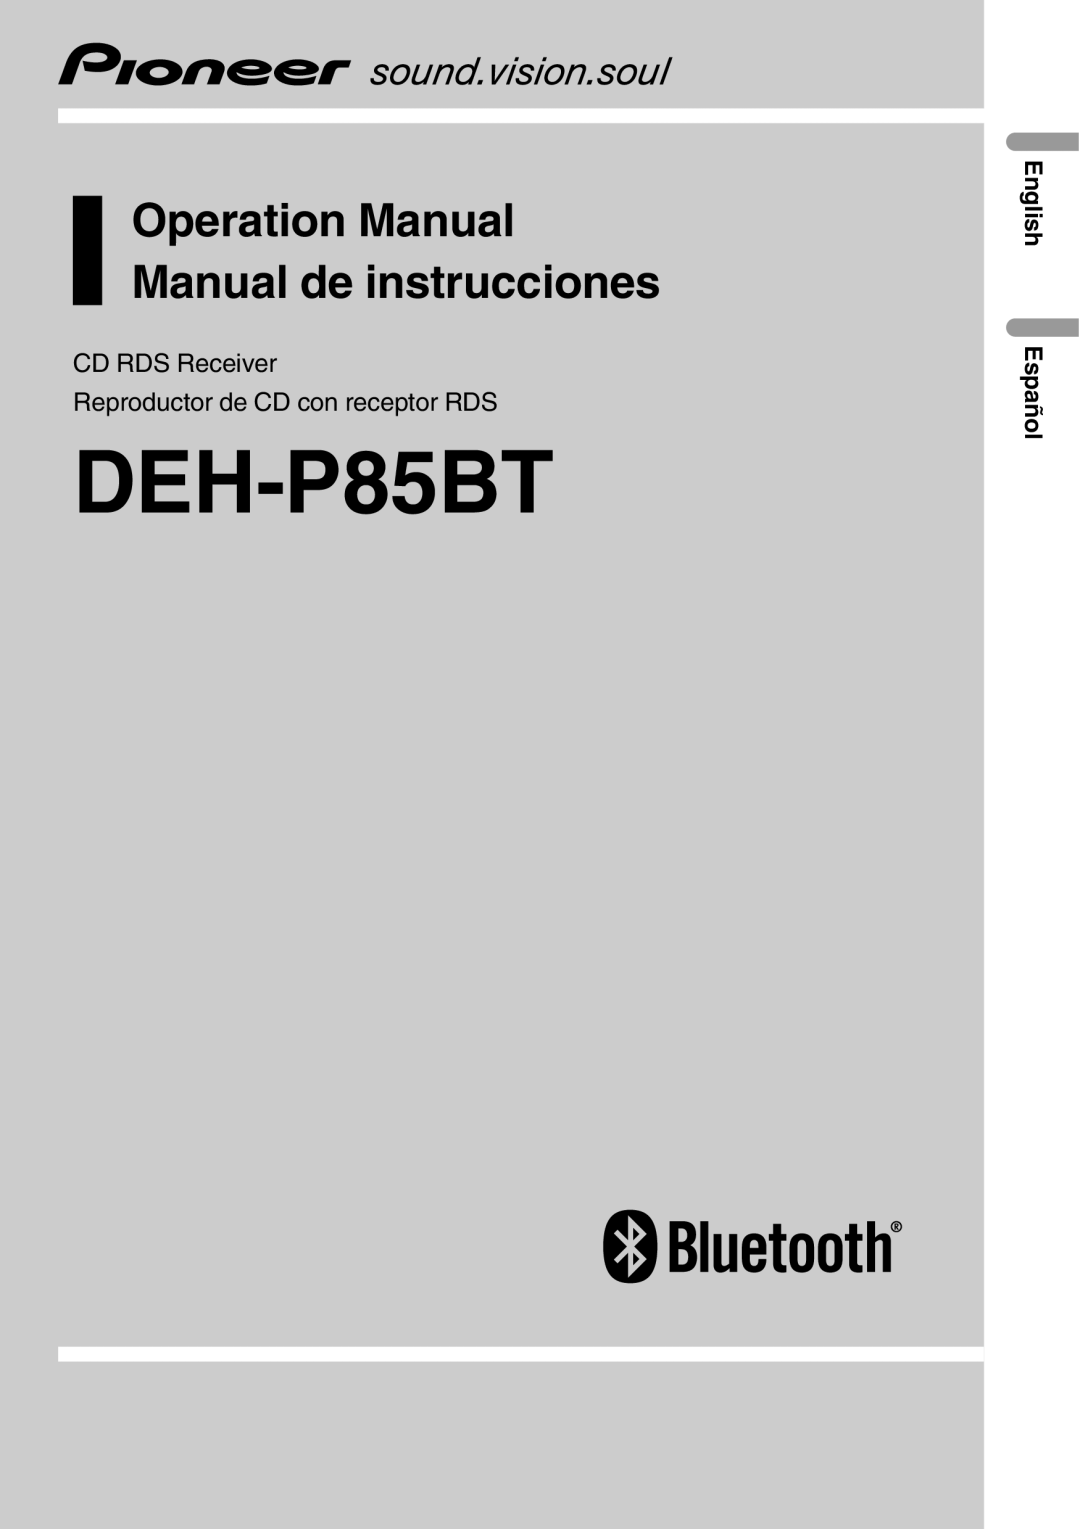 Pioneer DEH-P85BT operation manual CD RDS Receiver, Reproductor de CD con receptor RDS, English Español 